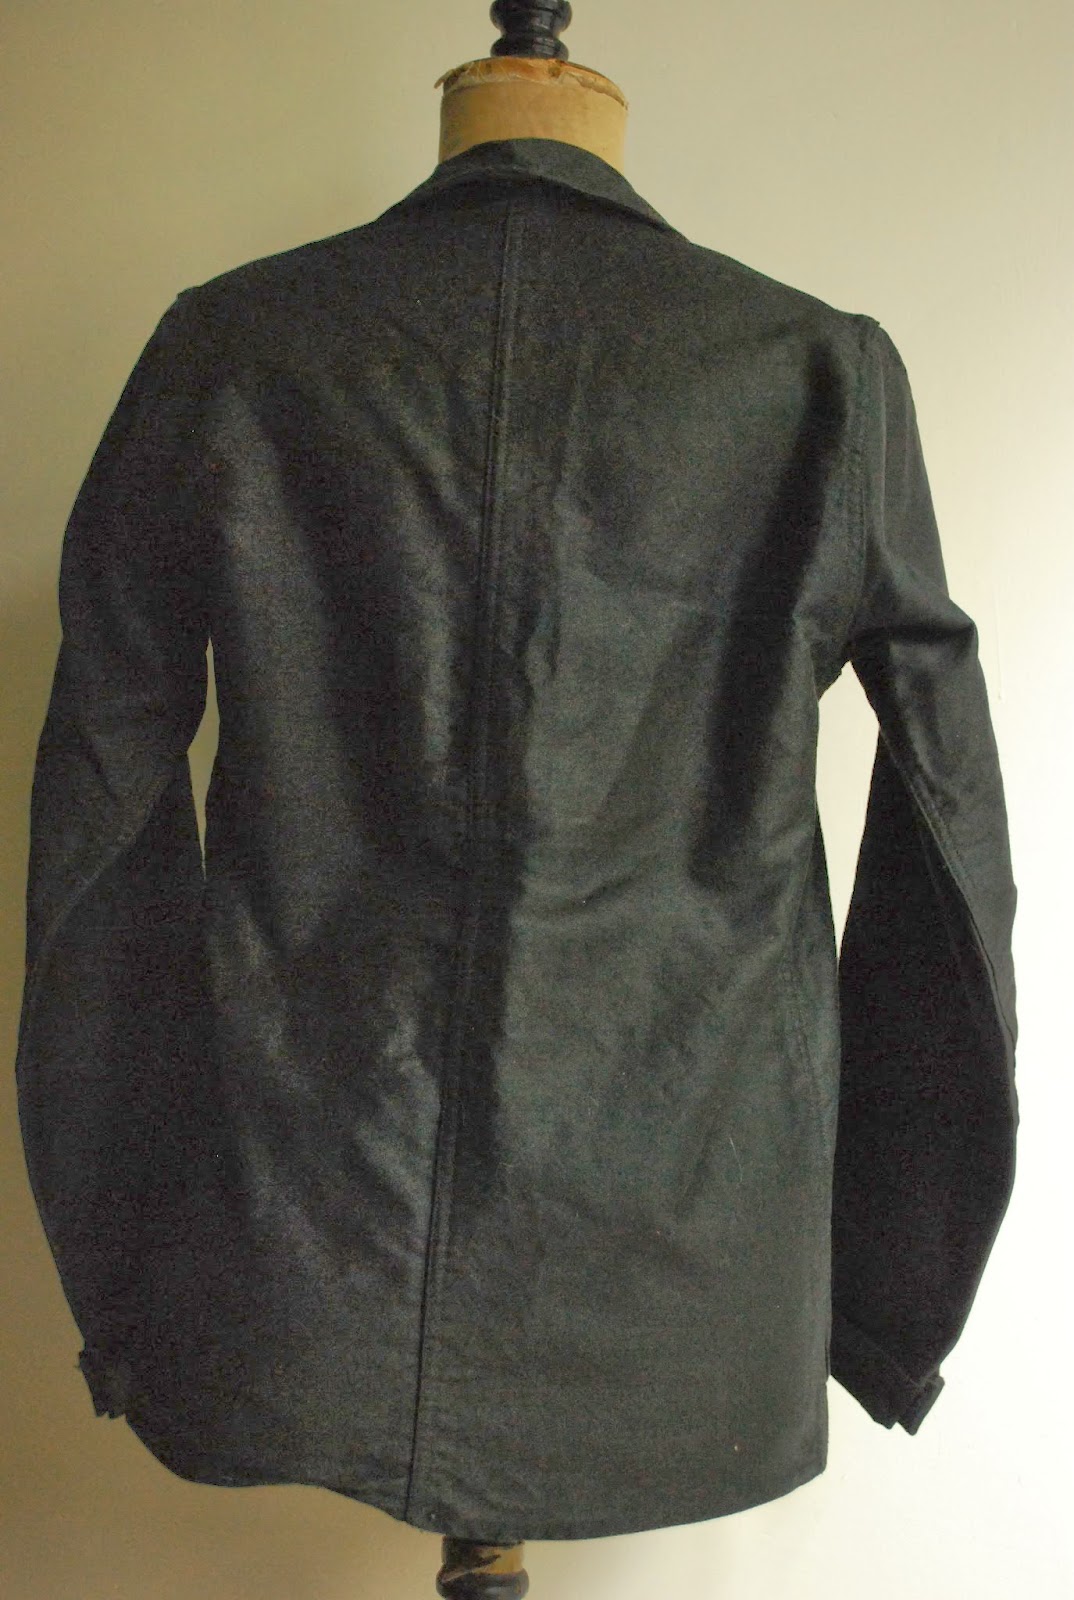 encore: 1950s french work moleskin jacket "dead stock"